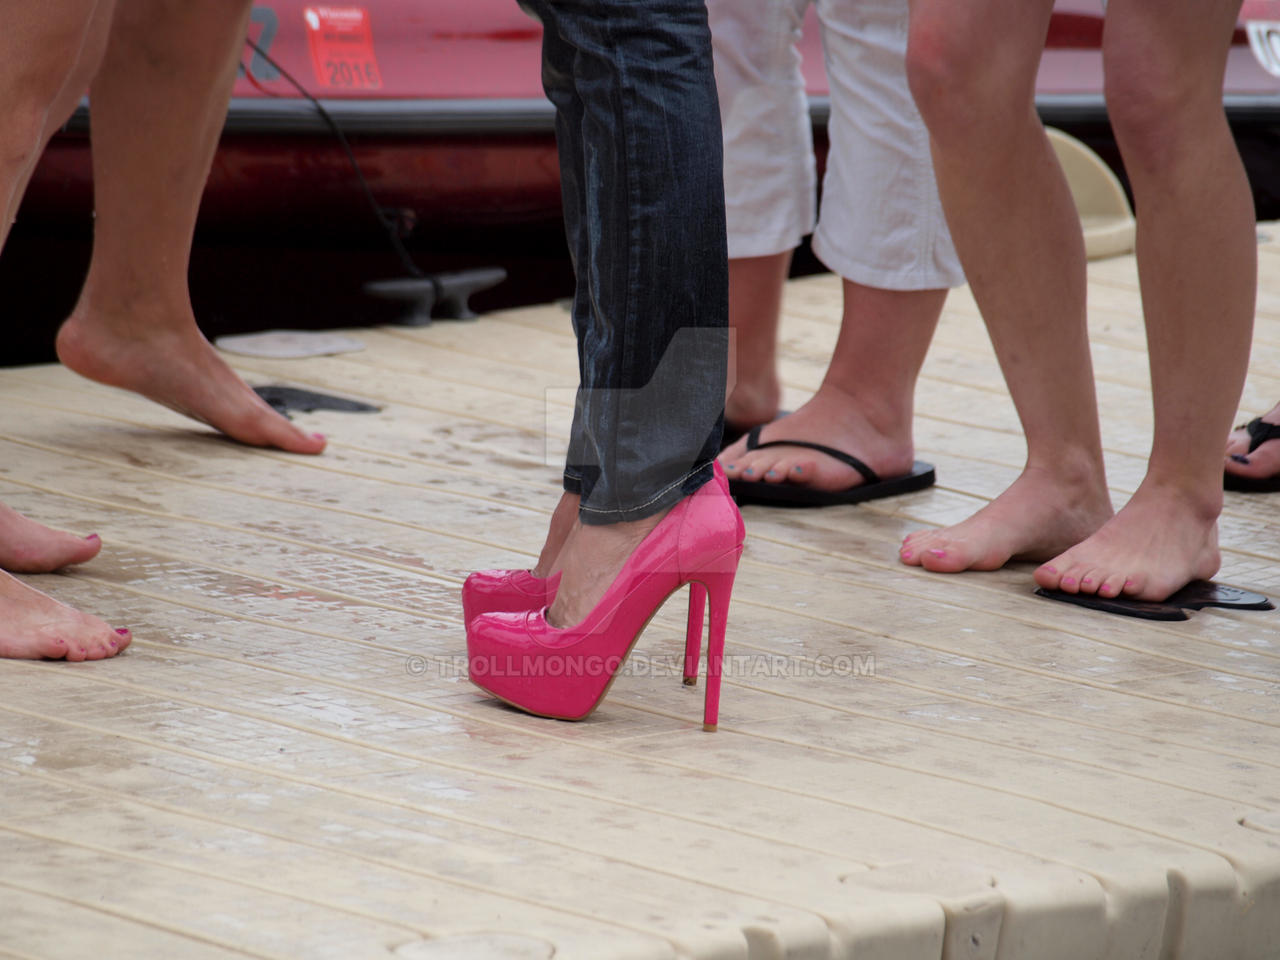 Pink Heels 2